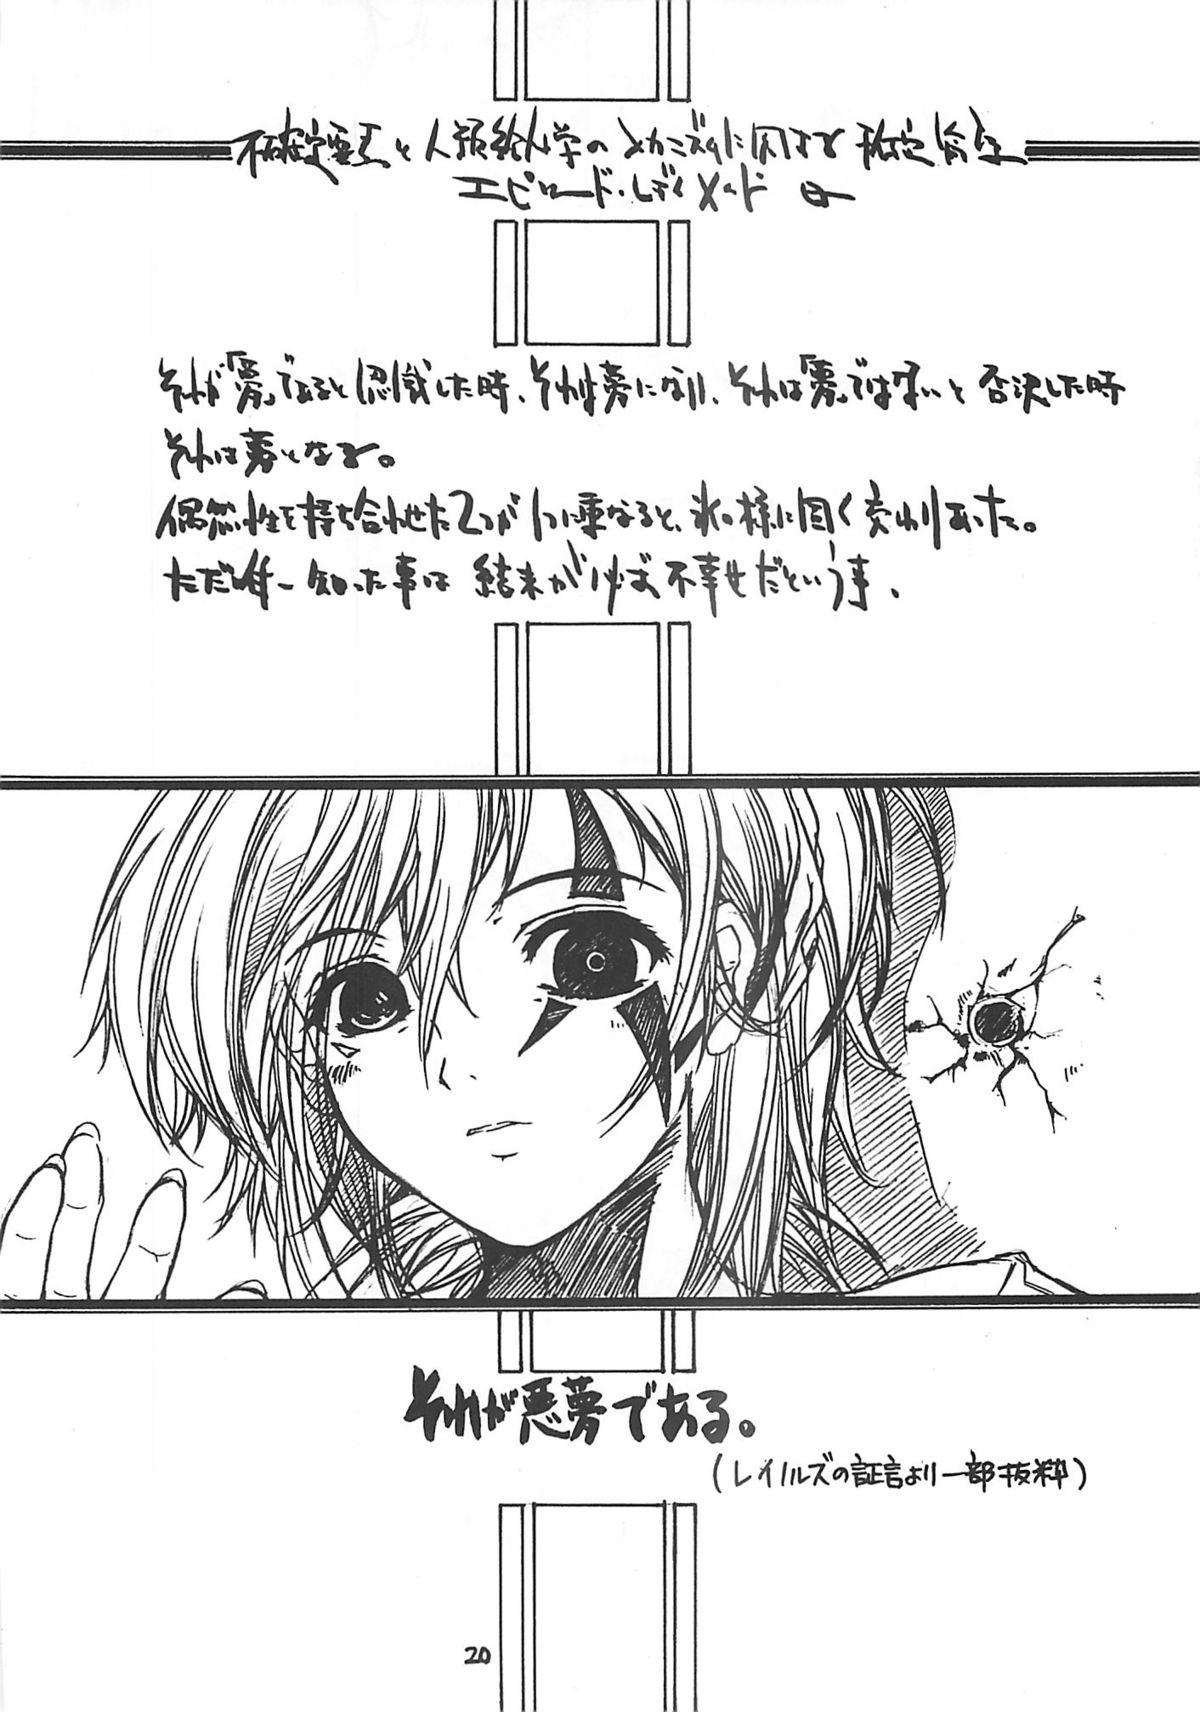 [Virgin Virus (Matsumi Jun)] Fukakutei Youso to Jinrui Kyuushi gaku no Mechanism ni kansuru Suitei Ronri (Kari) EPISODE LADYMAID 0 [2nd Edition] 18